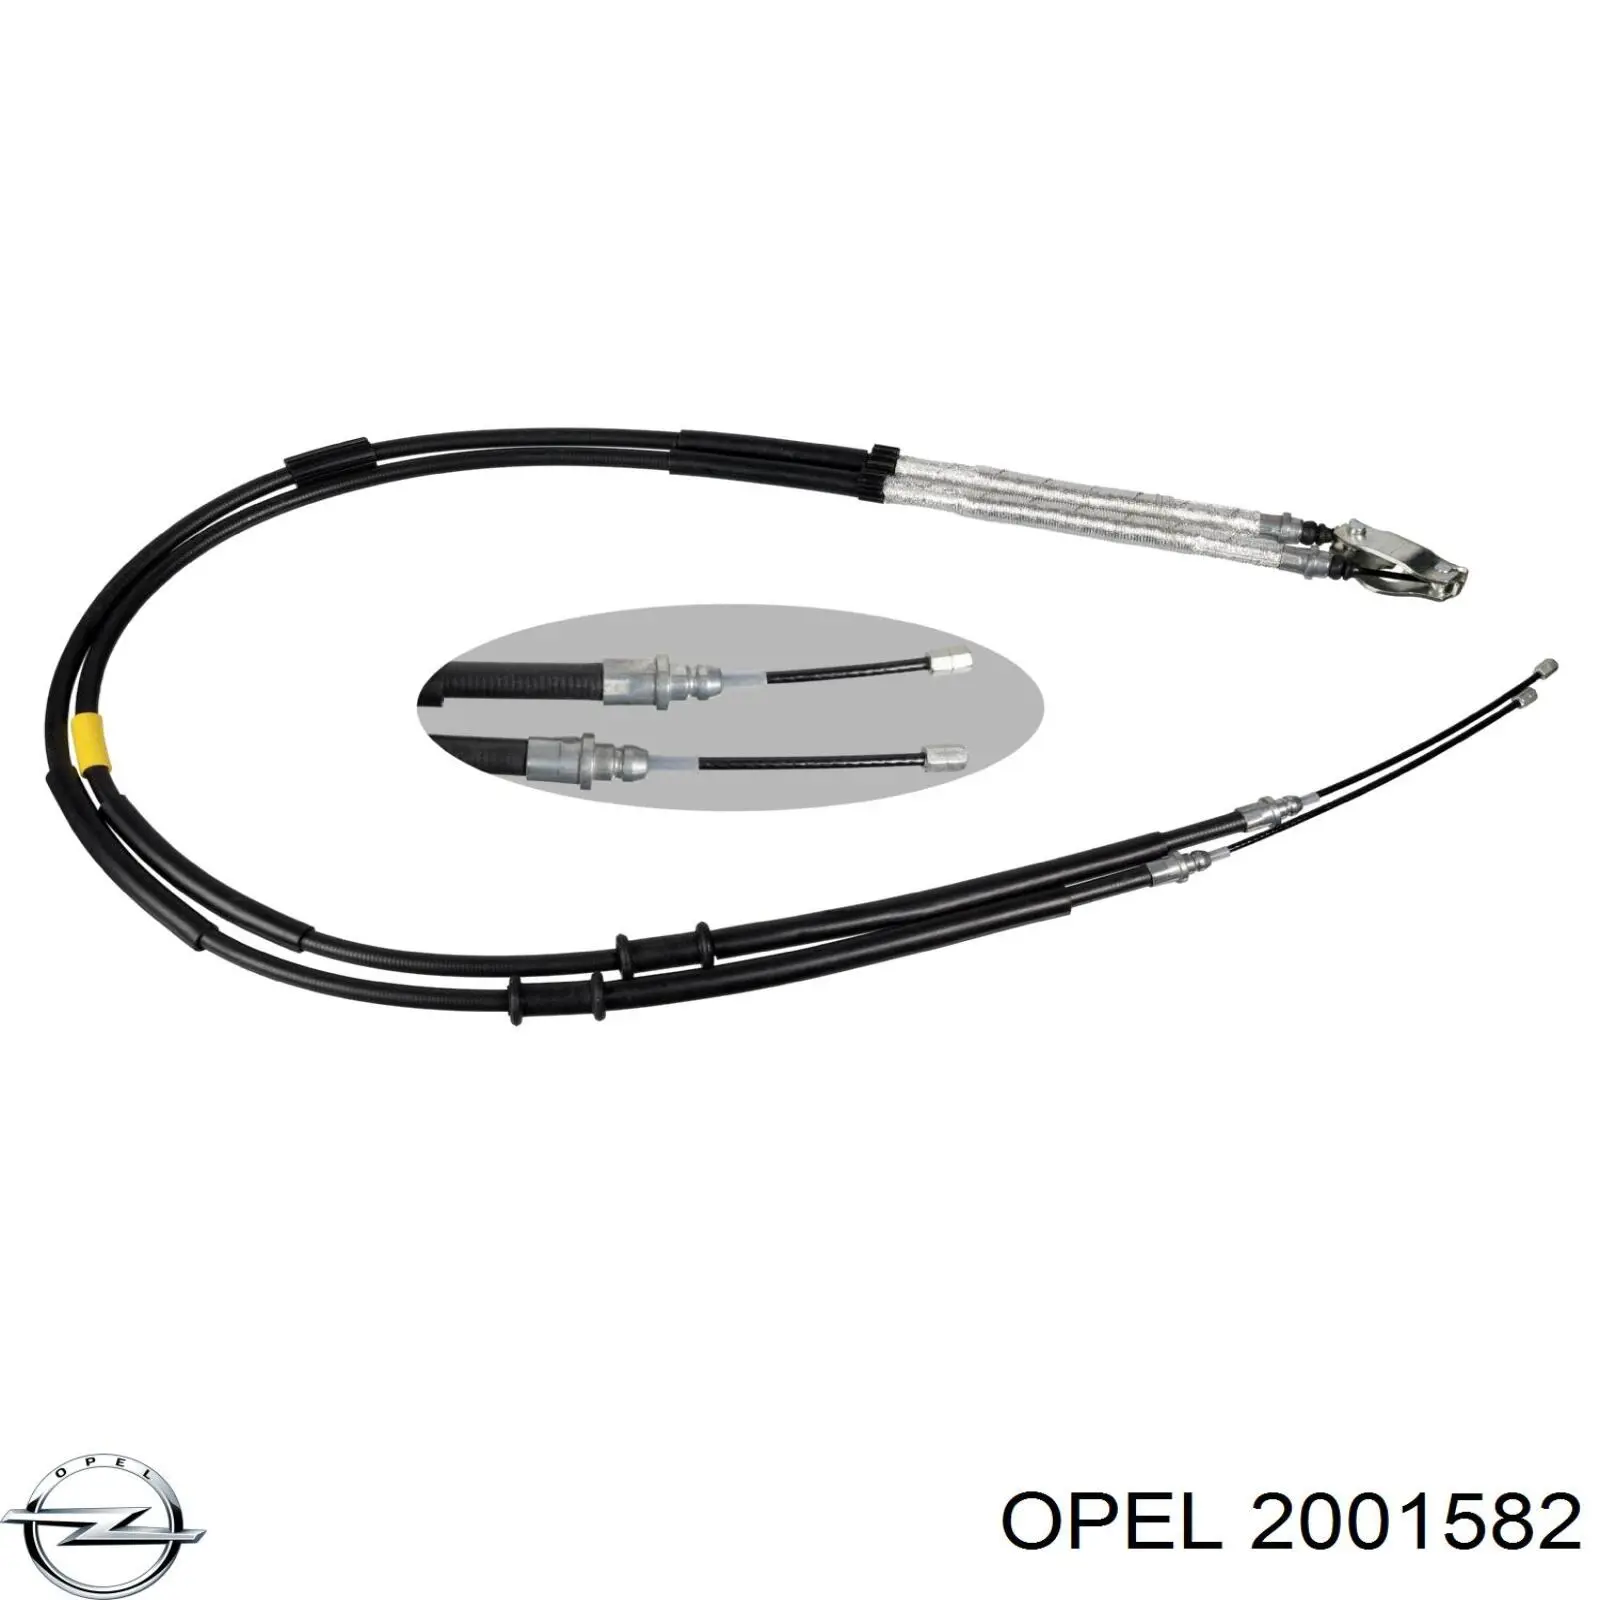 2001582 Opel 